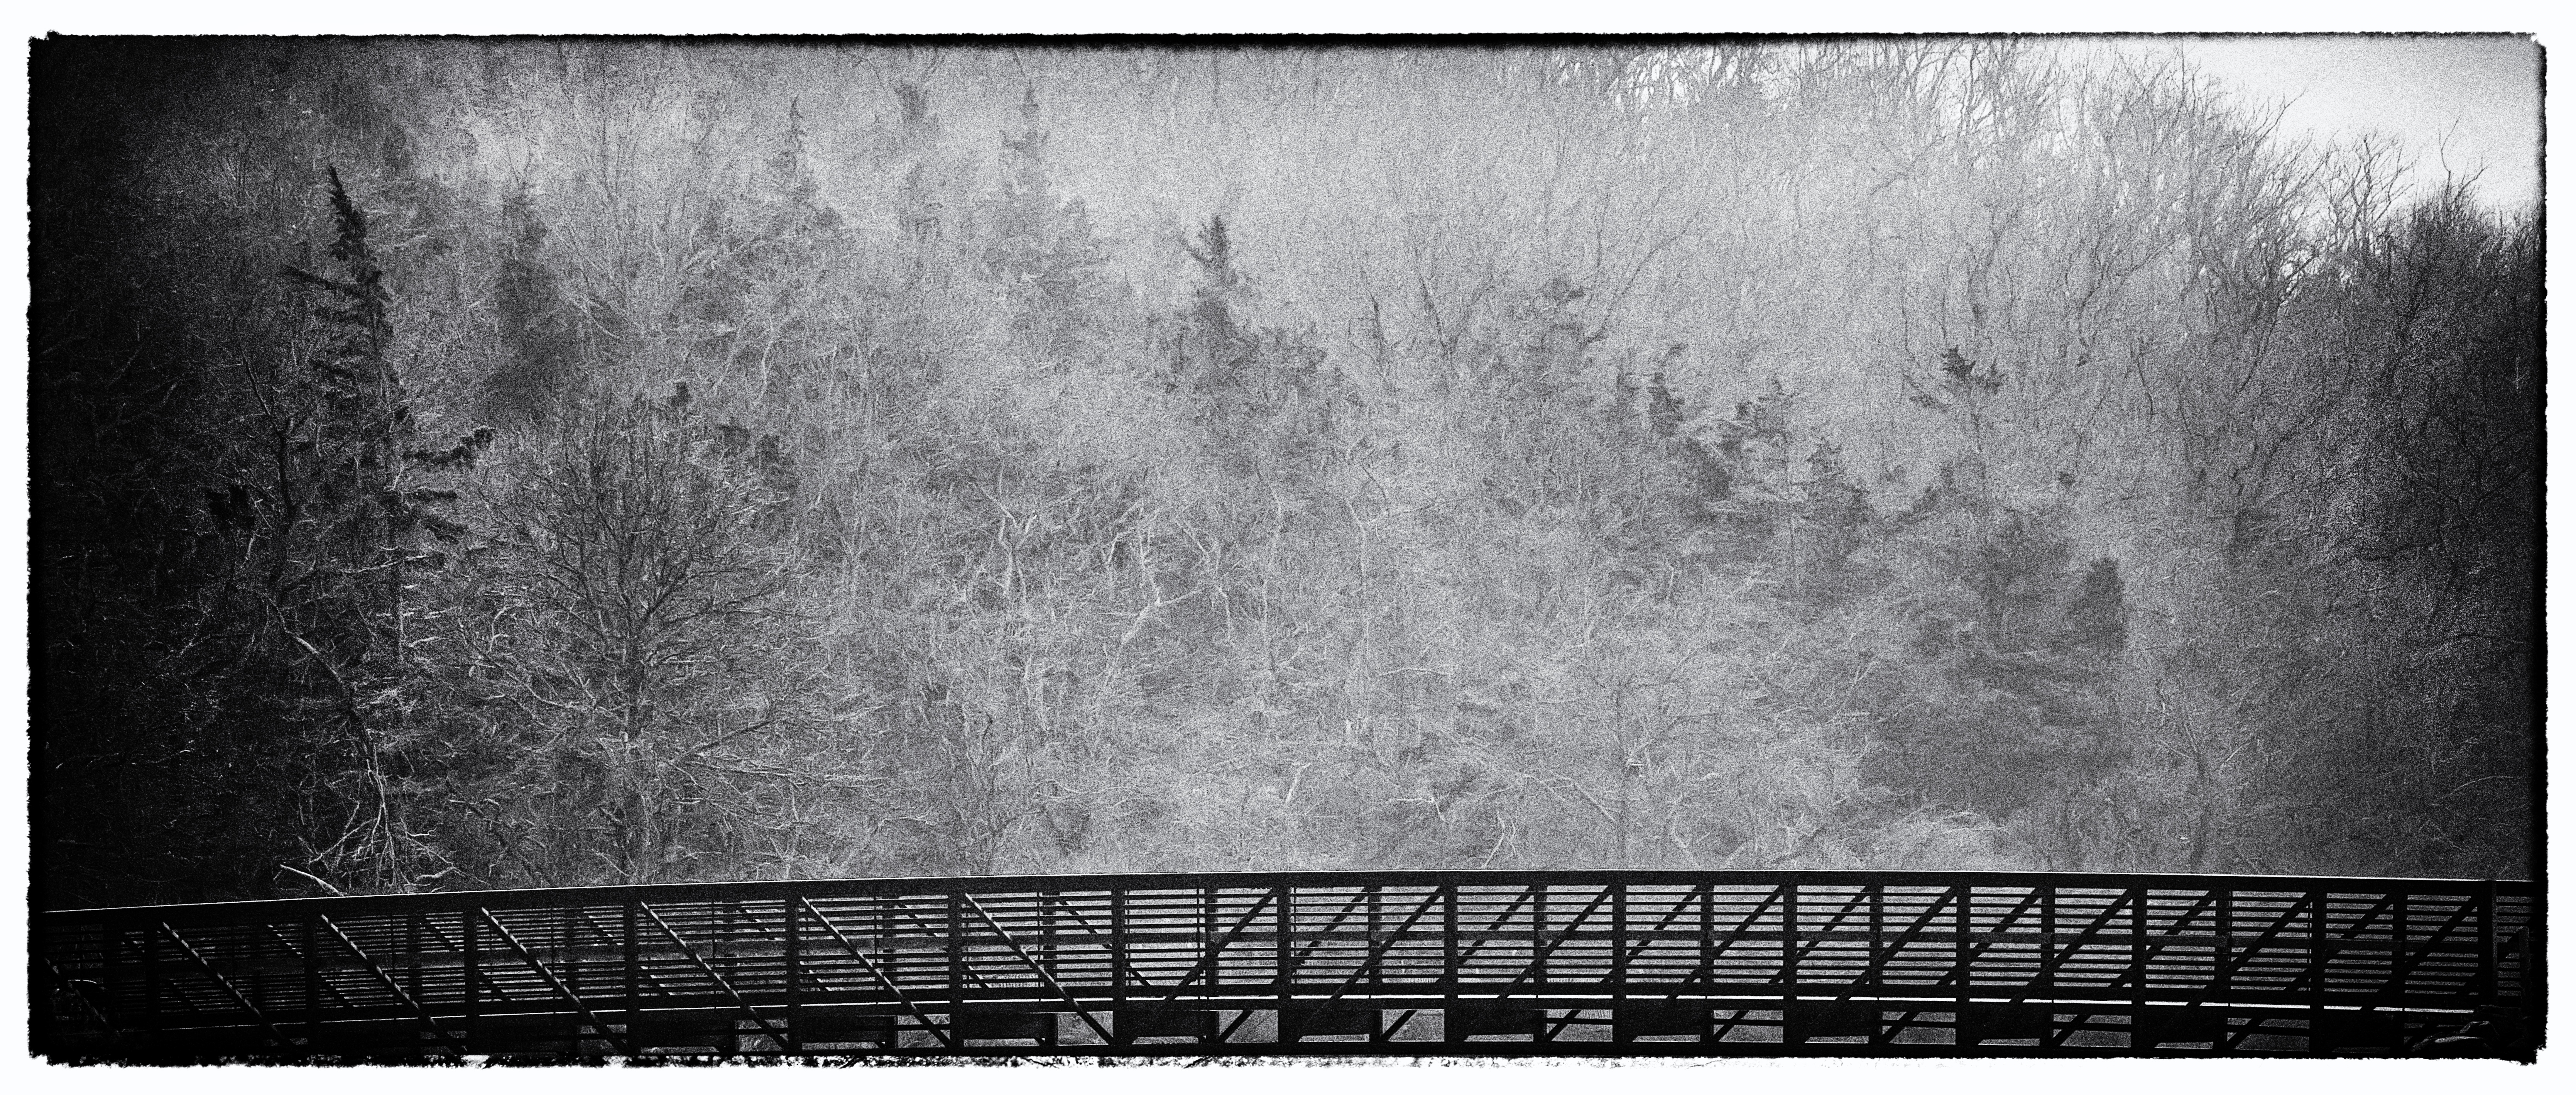 sunken-Meadow-Bridge-in-Fog